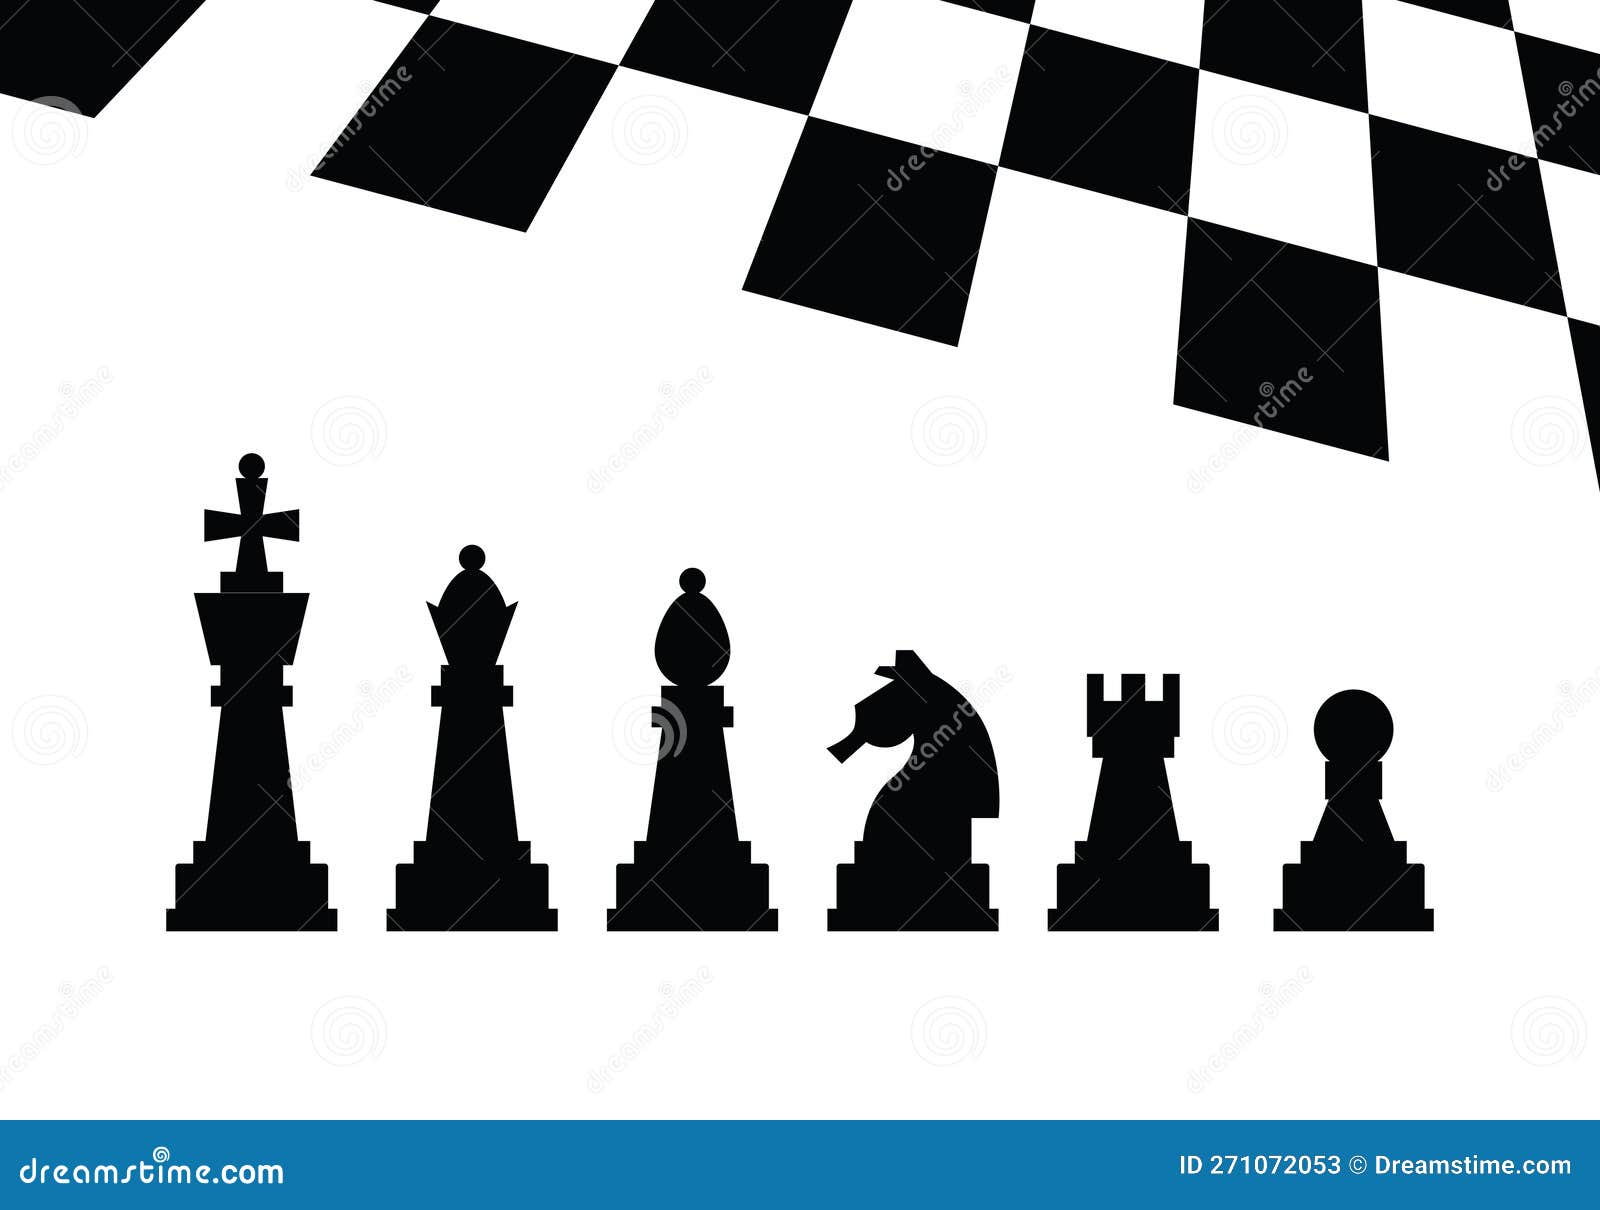 tabuleiro de xadrez com silhuettes de peças de xadrez em fundo